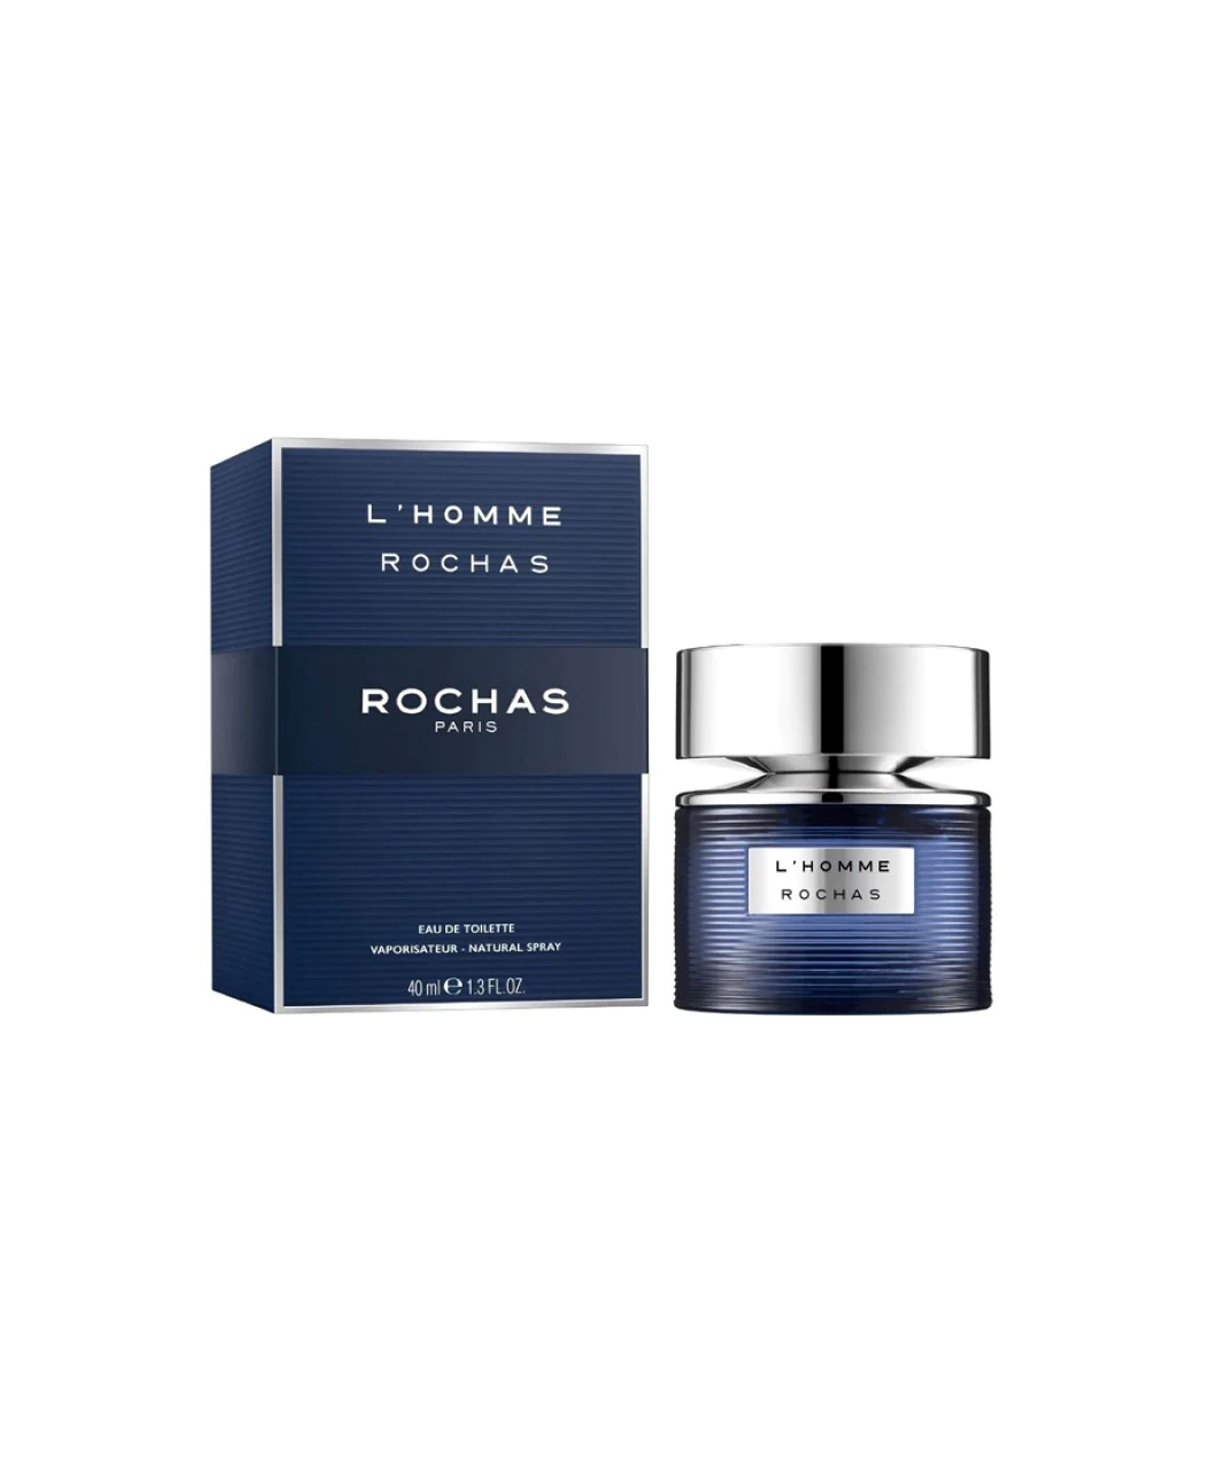 Perfume «Rochas» L'Homme, for men, 40 ml